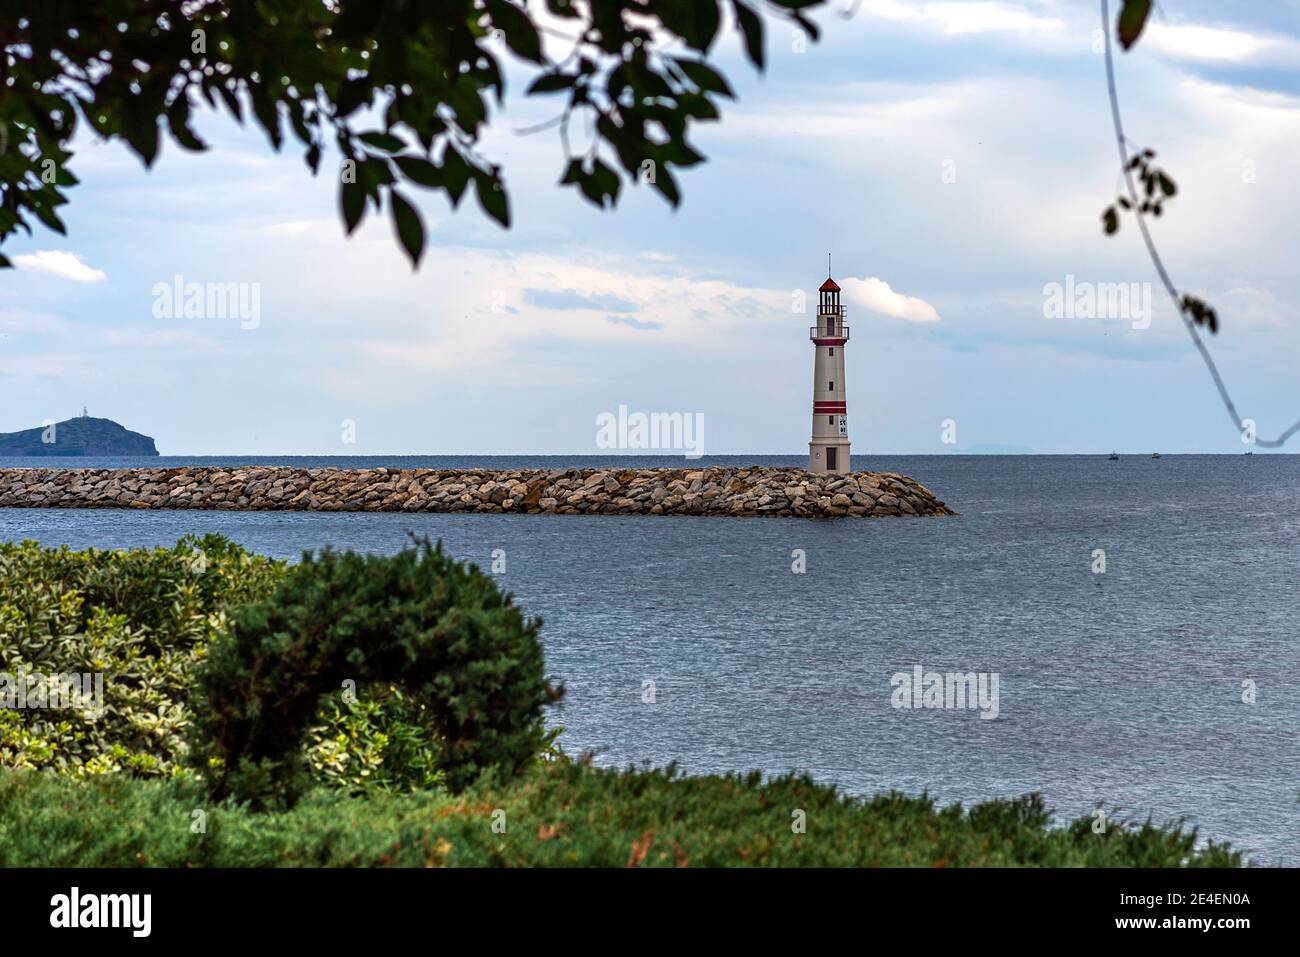 Baumbank und Leuchtturm am Meer.Turgutreis, Bodrum, Türkei Stockfoto